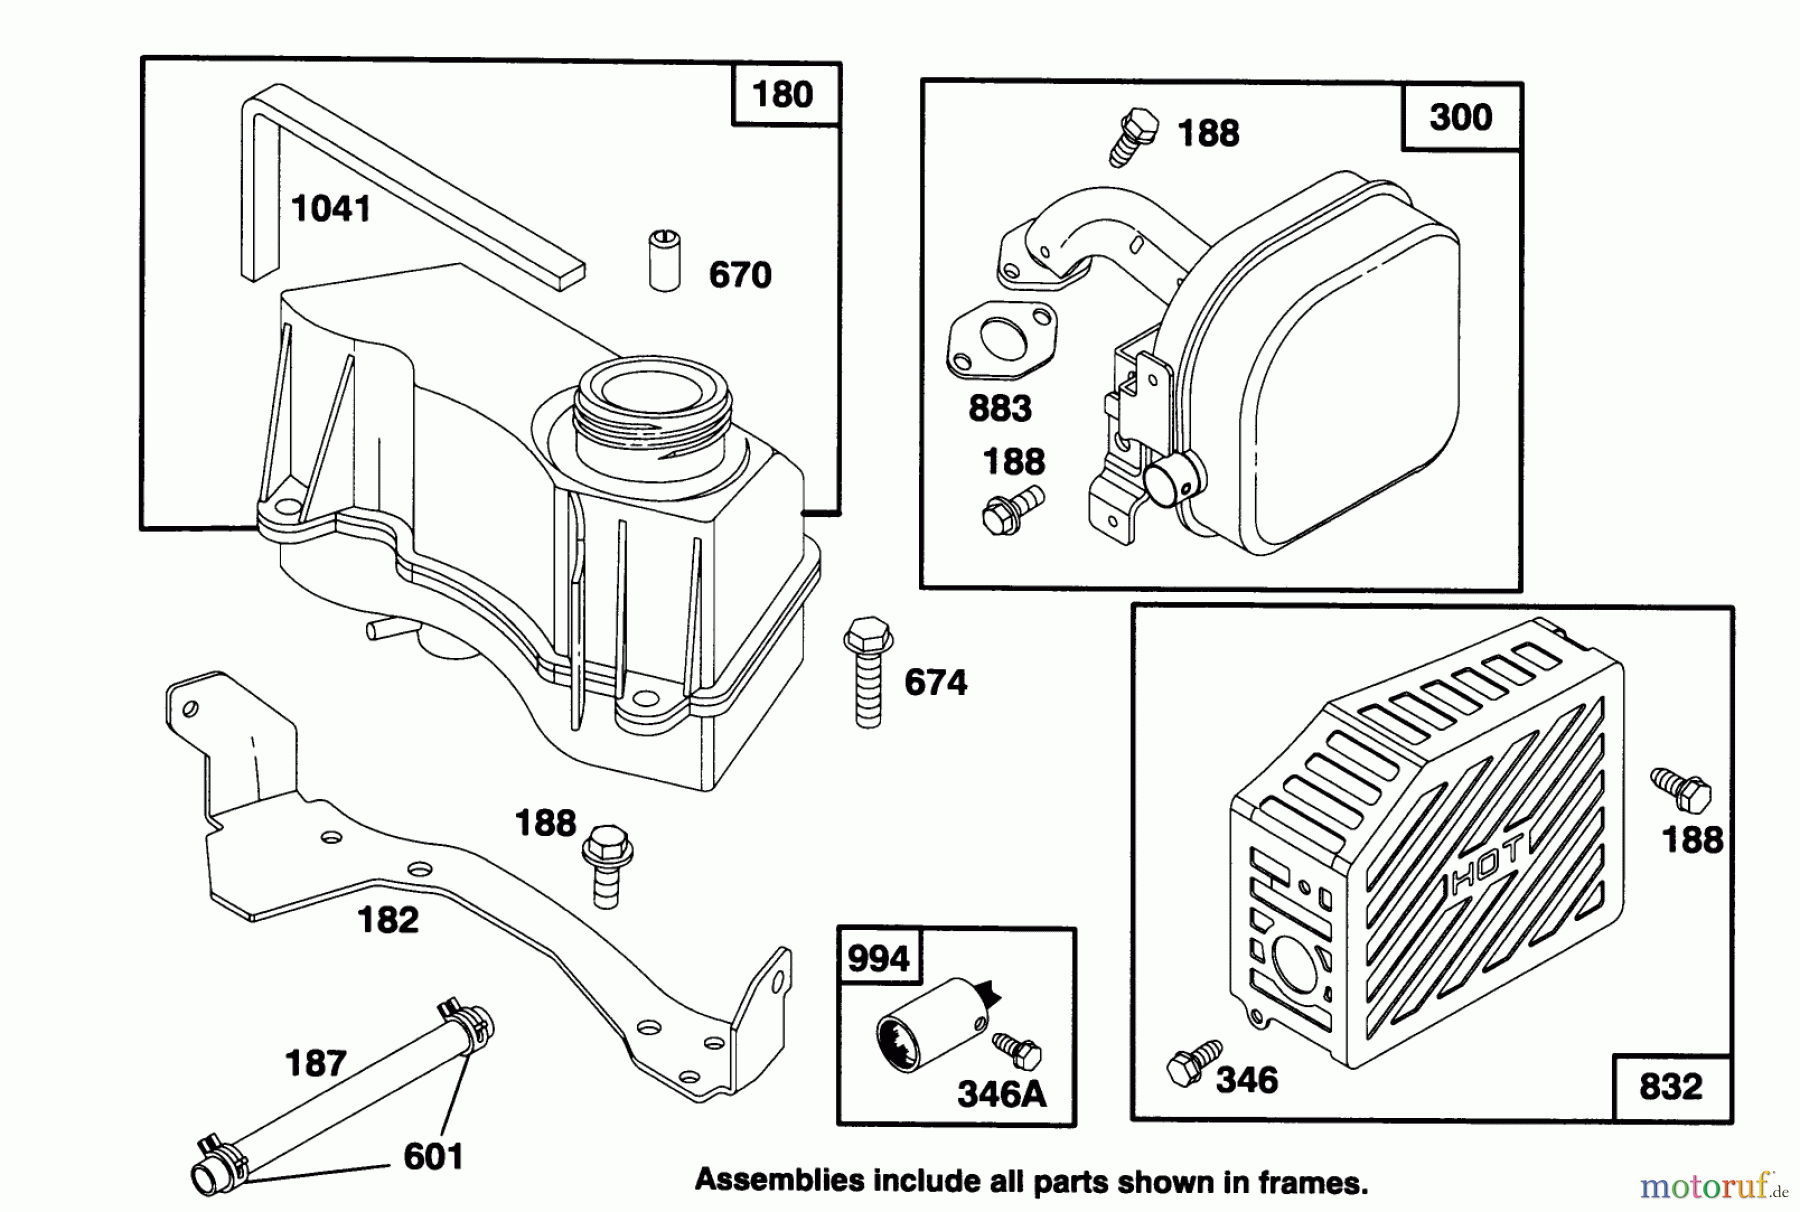  Toro Neu Mowers, Walk-Behind Seite 2 26630B - Toro Lawnmower, 1994 (4900001-4999999) ENGINE GTS 150 #7